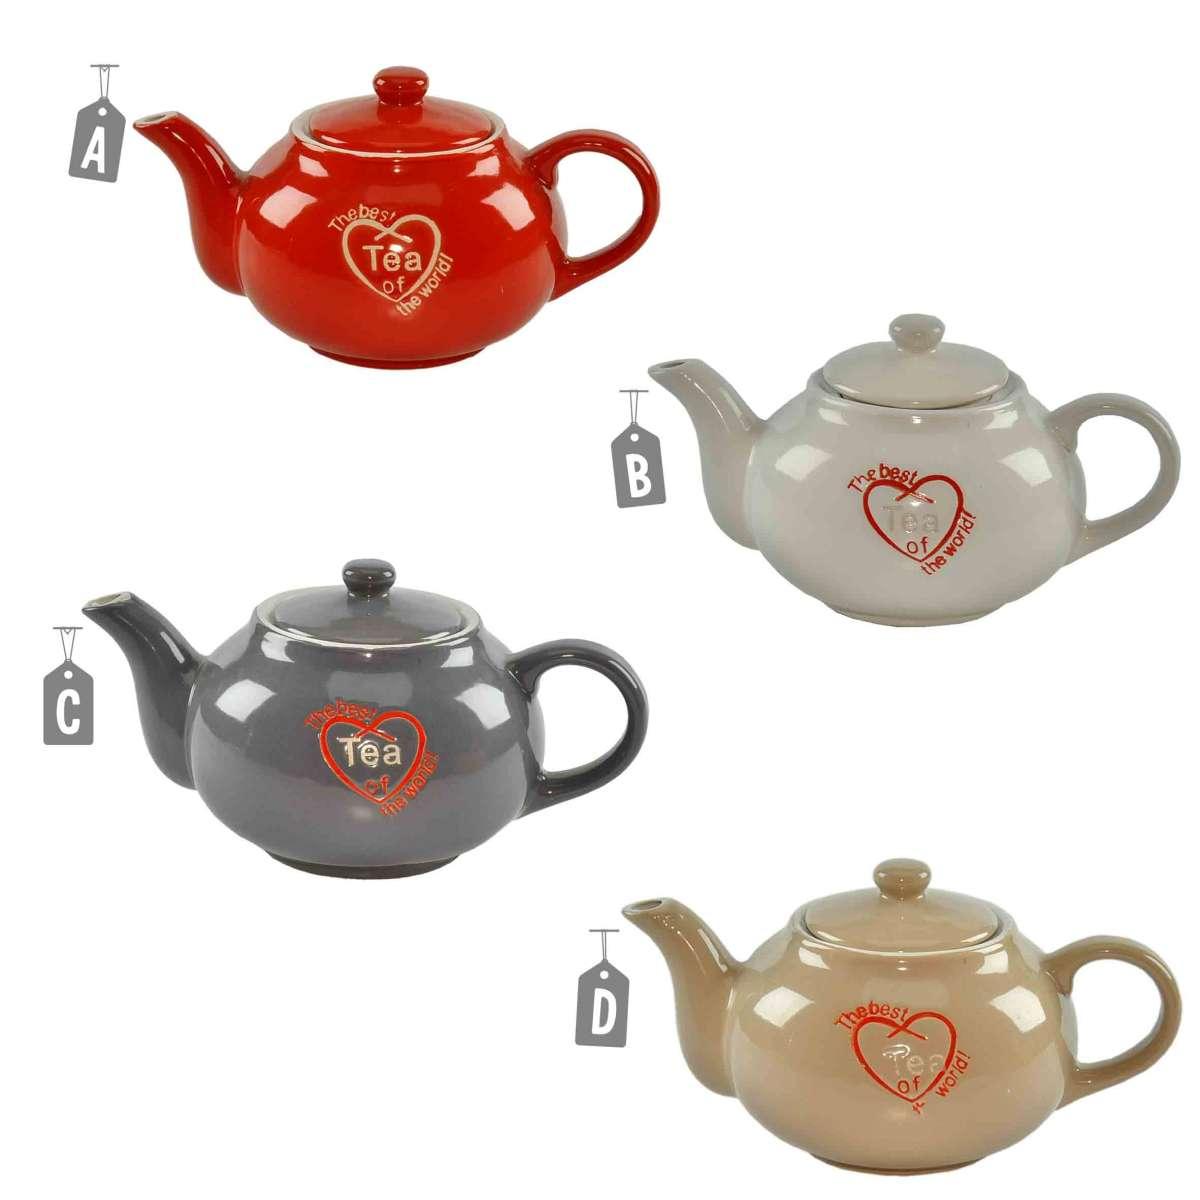 Gicos Teiera Ceramica The Best Tea 4 Colori 8025569685880-V 8025569685880